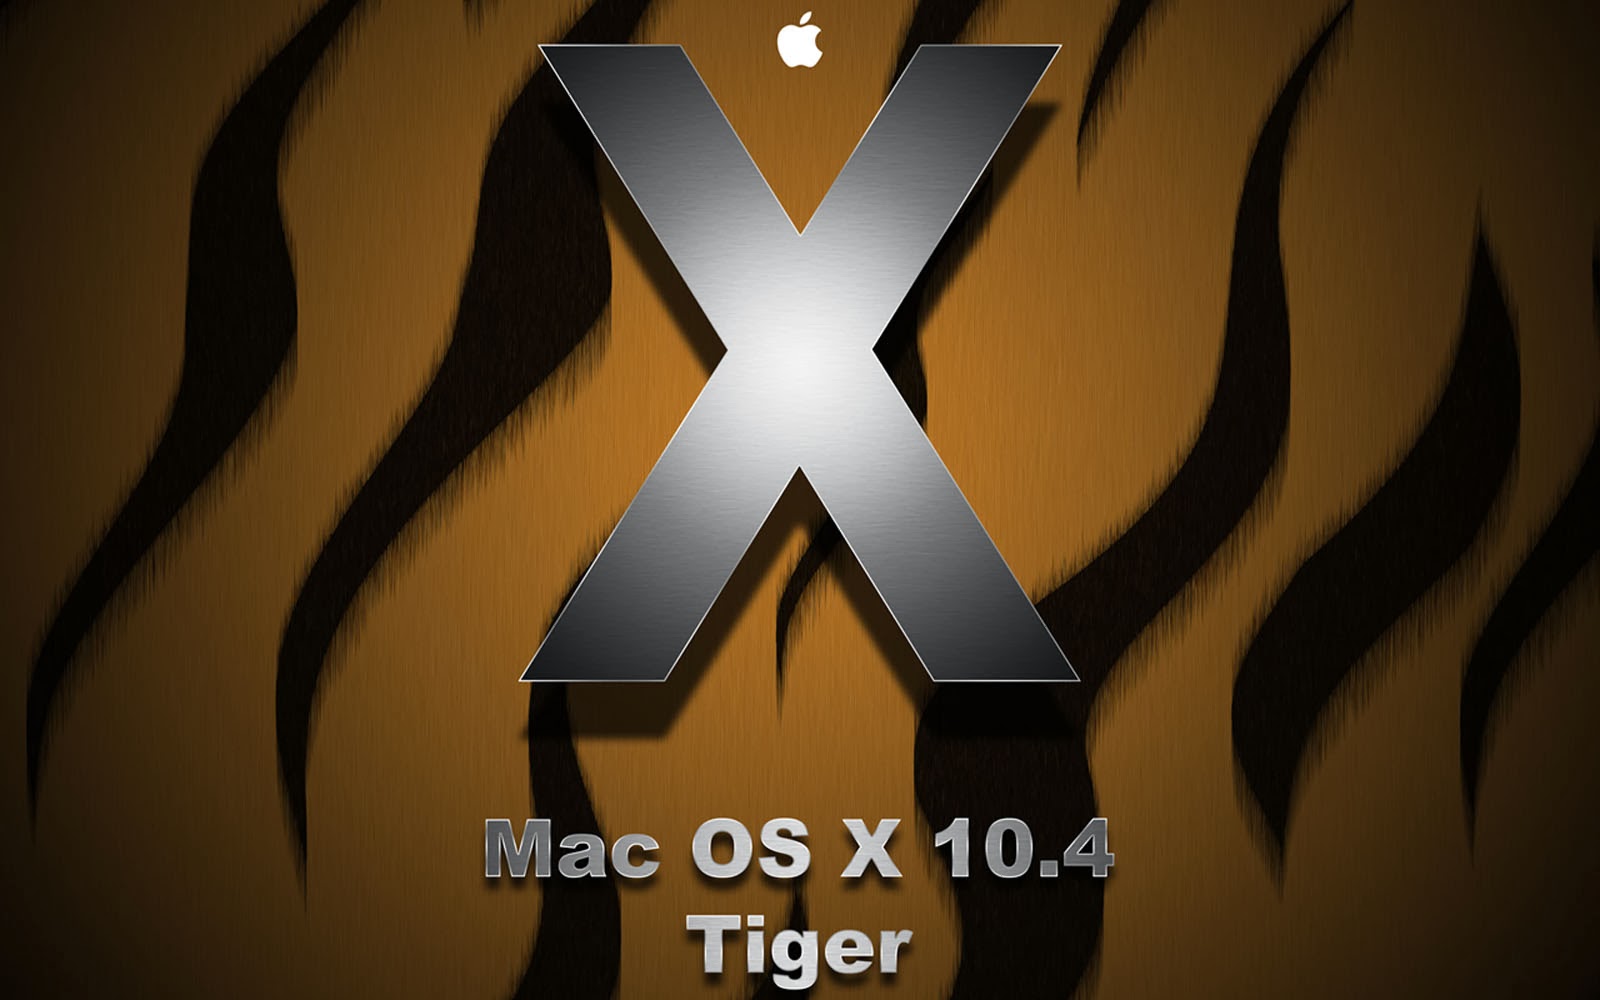 Mac Os X 10.5